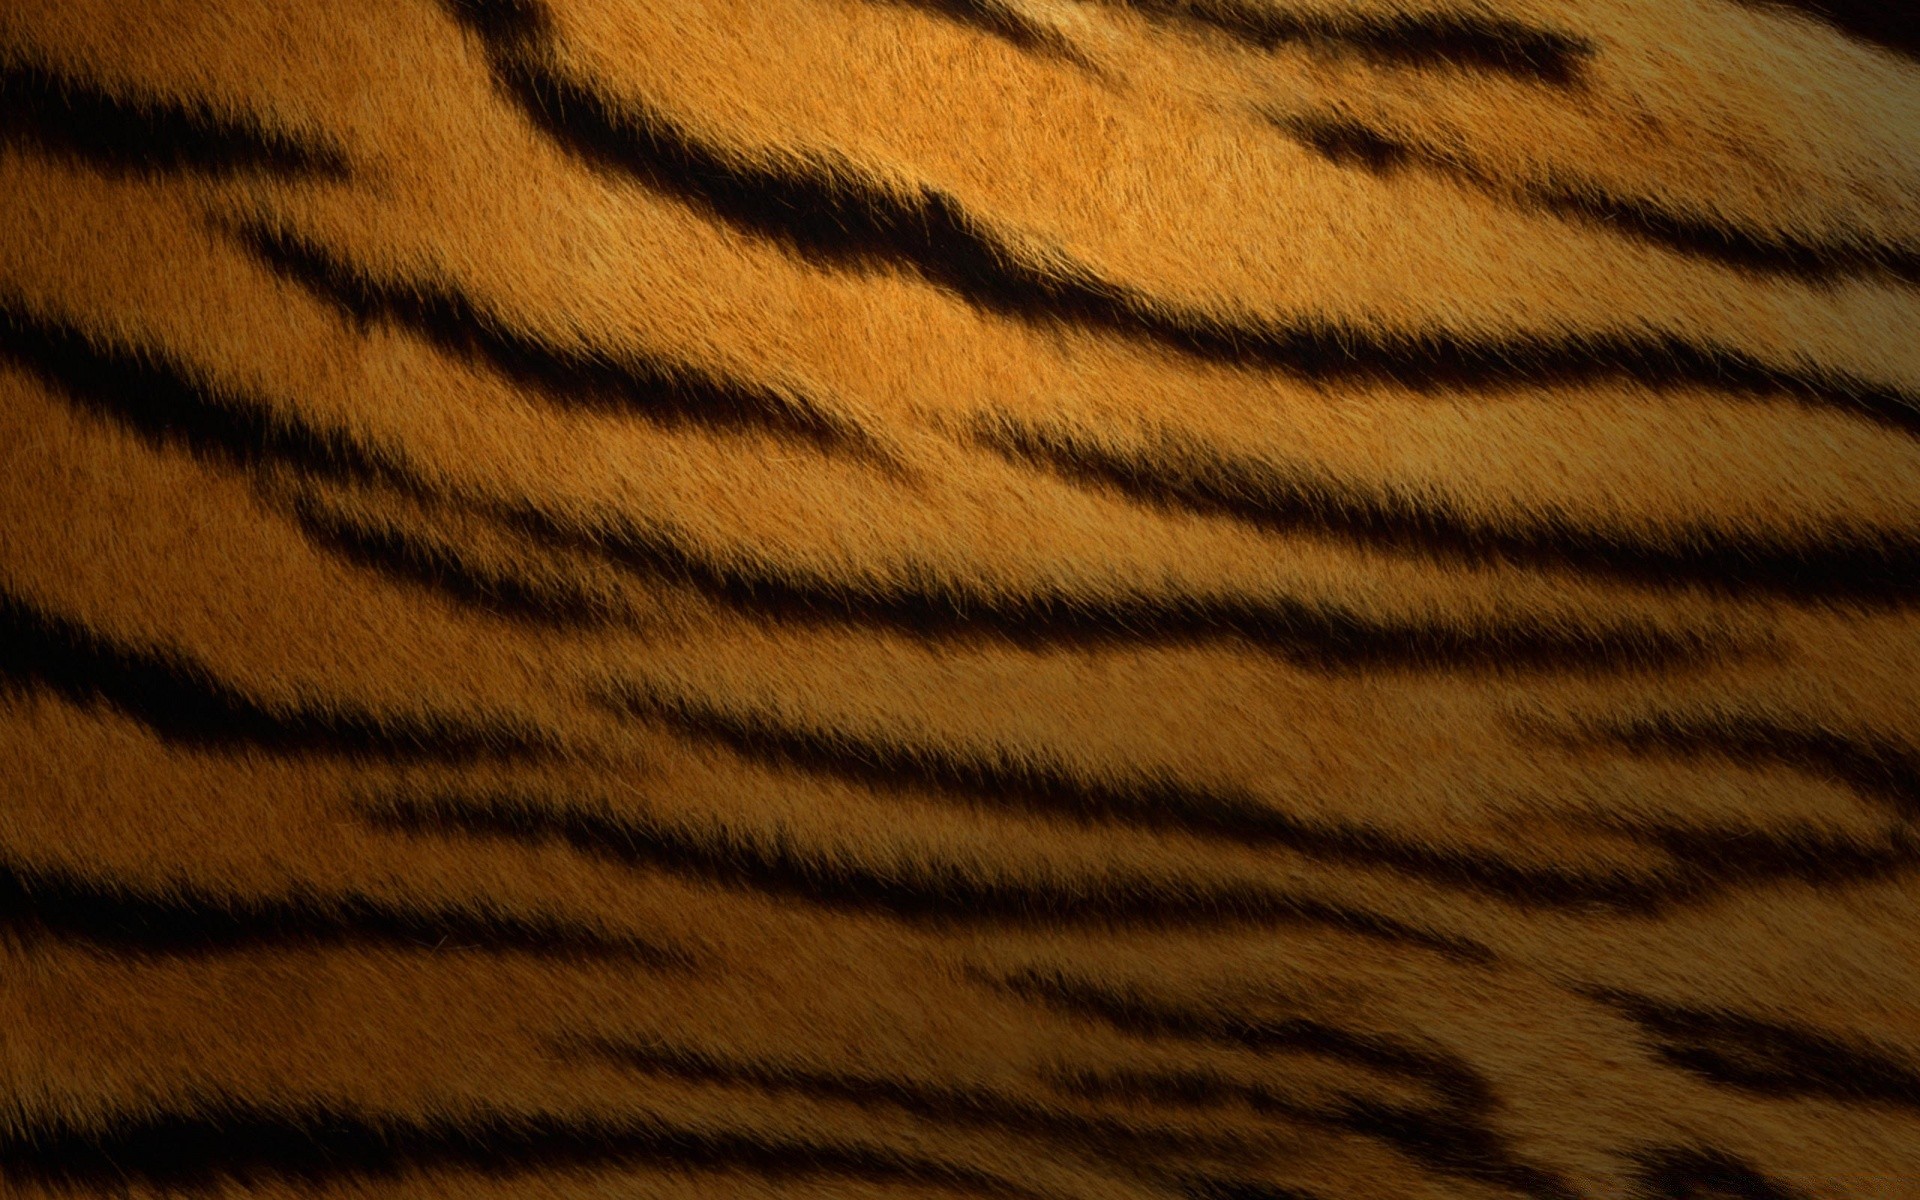 животные мех камуфляж полоса тигр шаблон сафари кошка текстура млекопитающее ткань гепард рабочего стола зоопарк дизайн леопард аннотация кожа осень джунгли